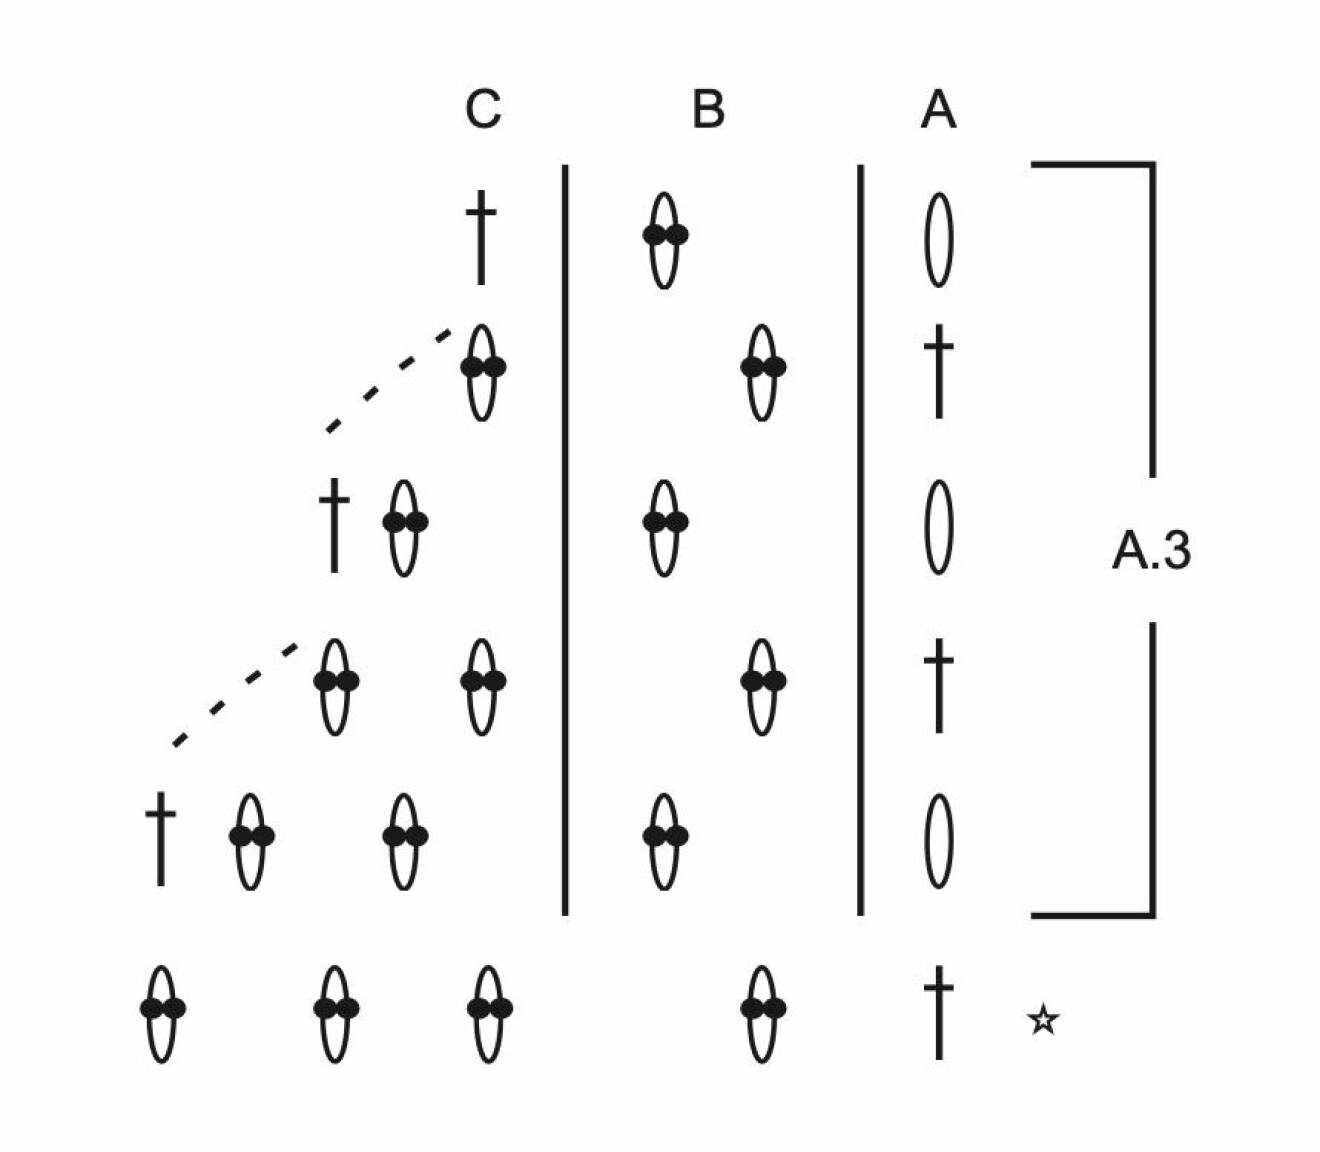 Diagram A.3